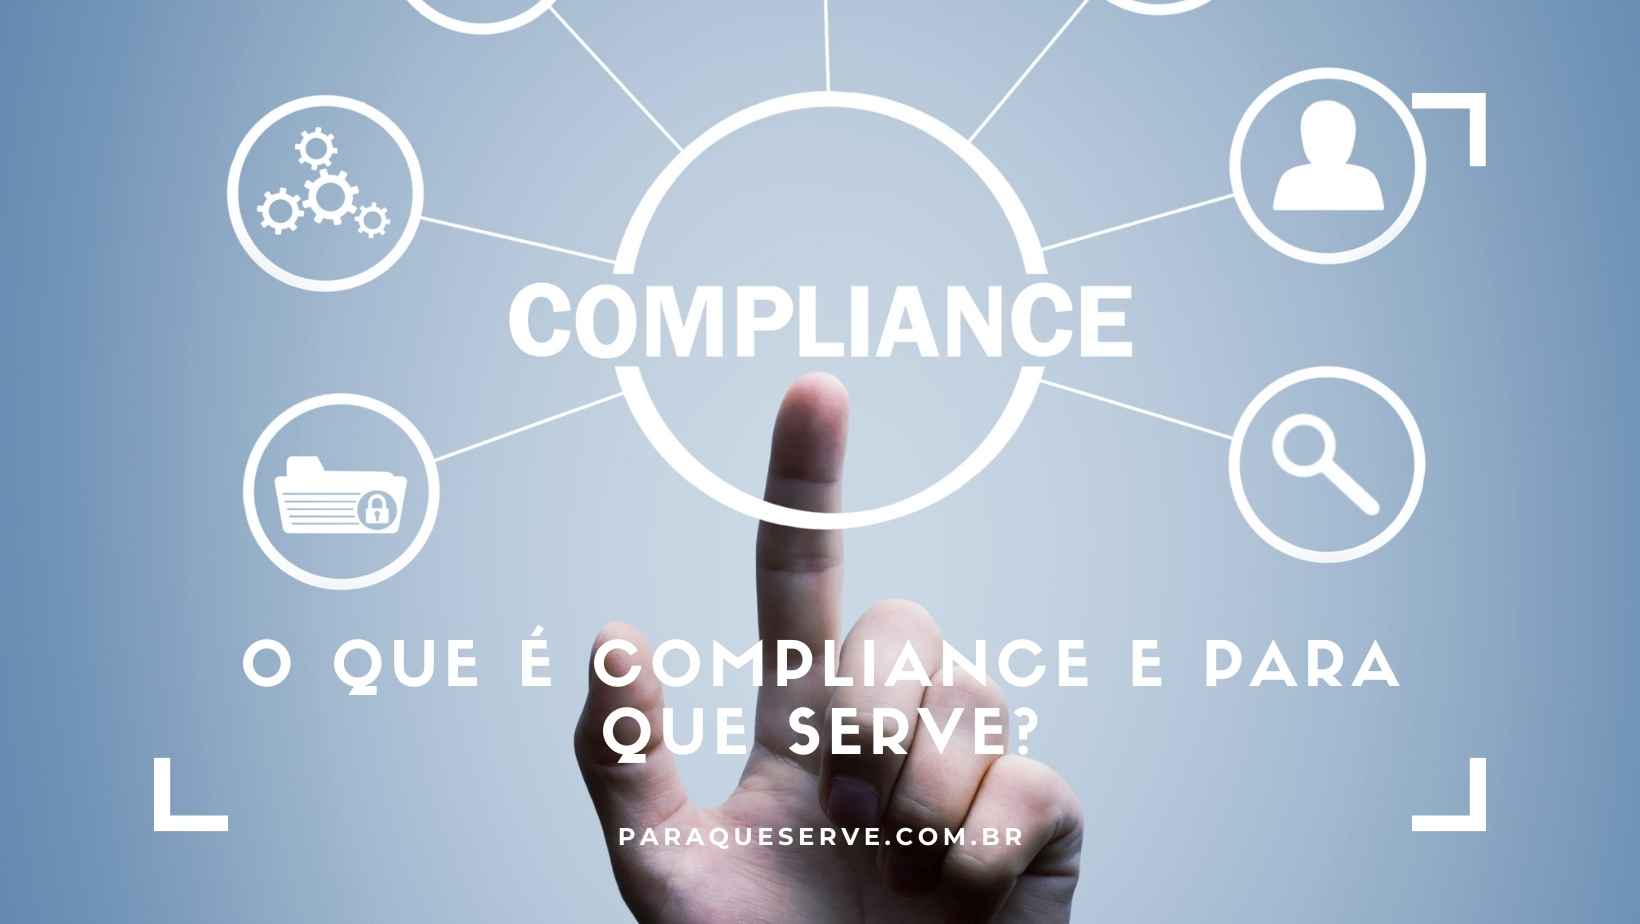 O que é compliance e para que serve?